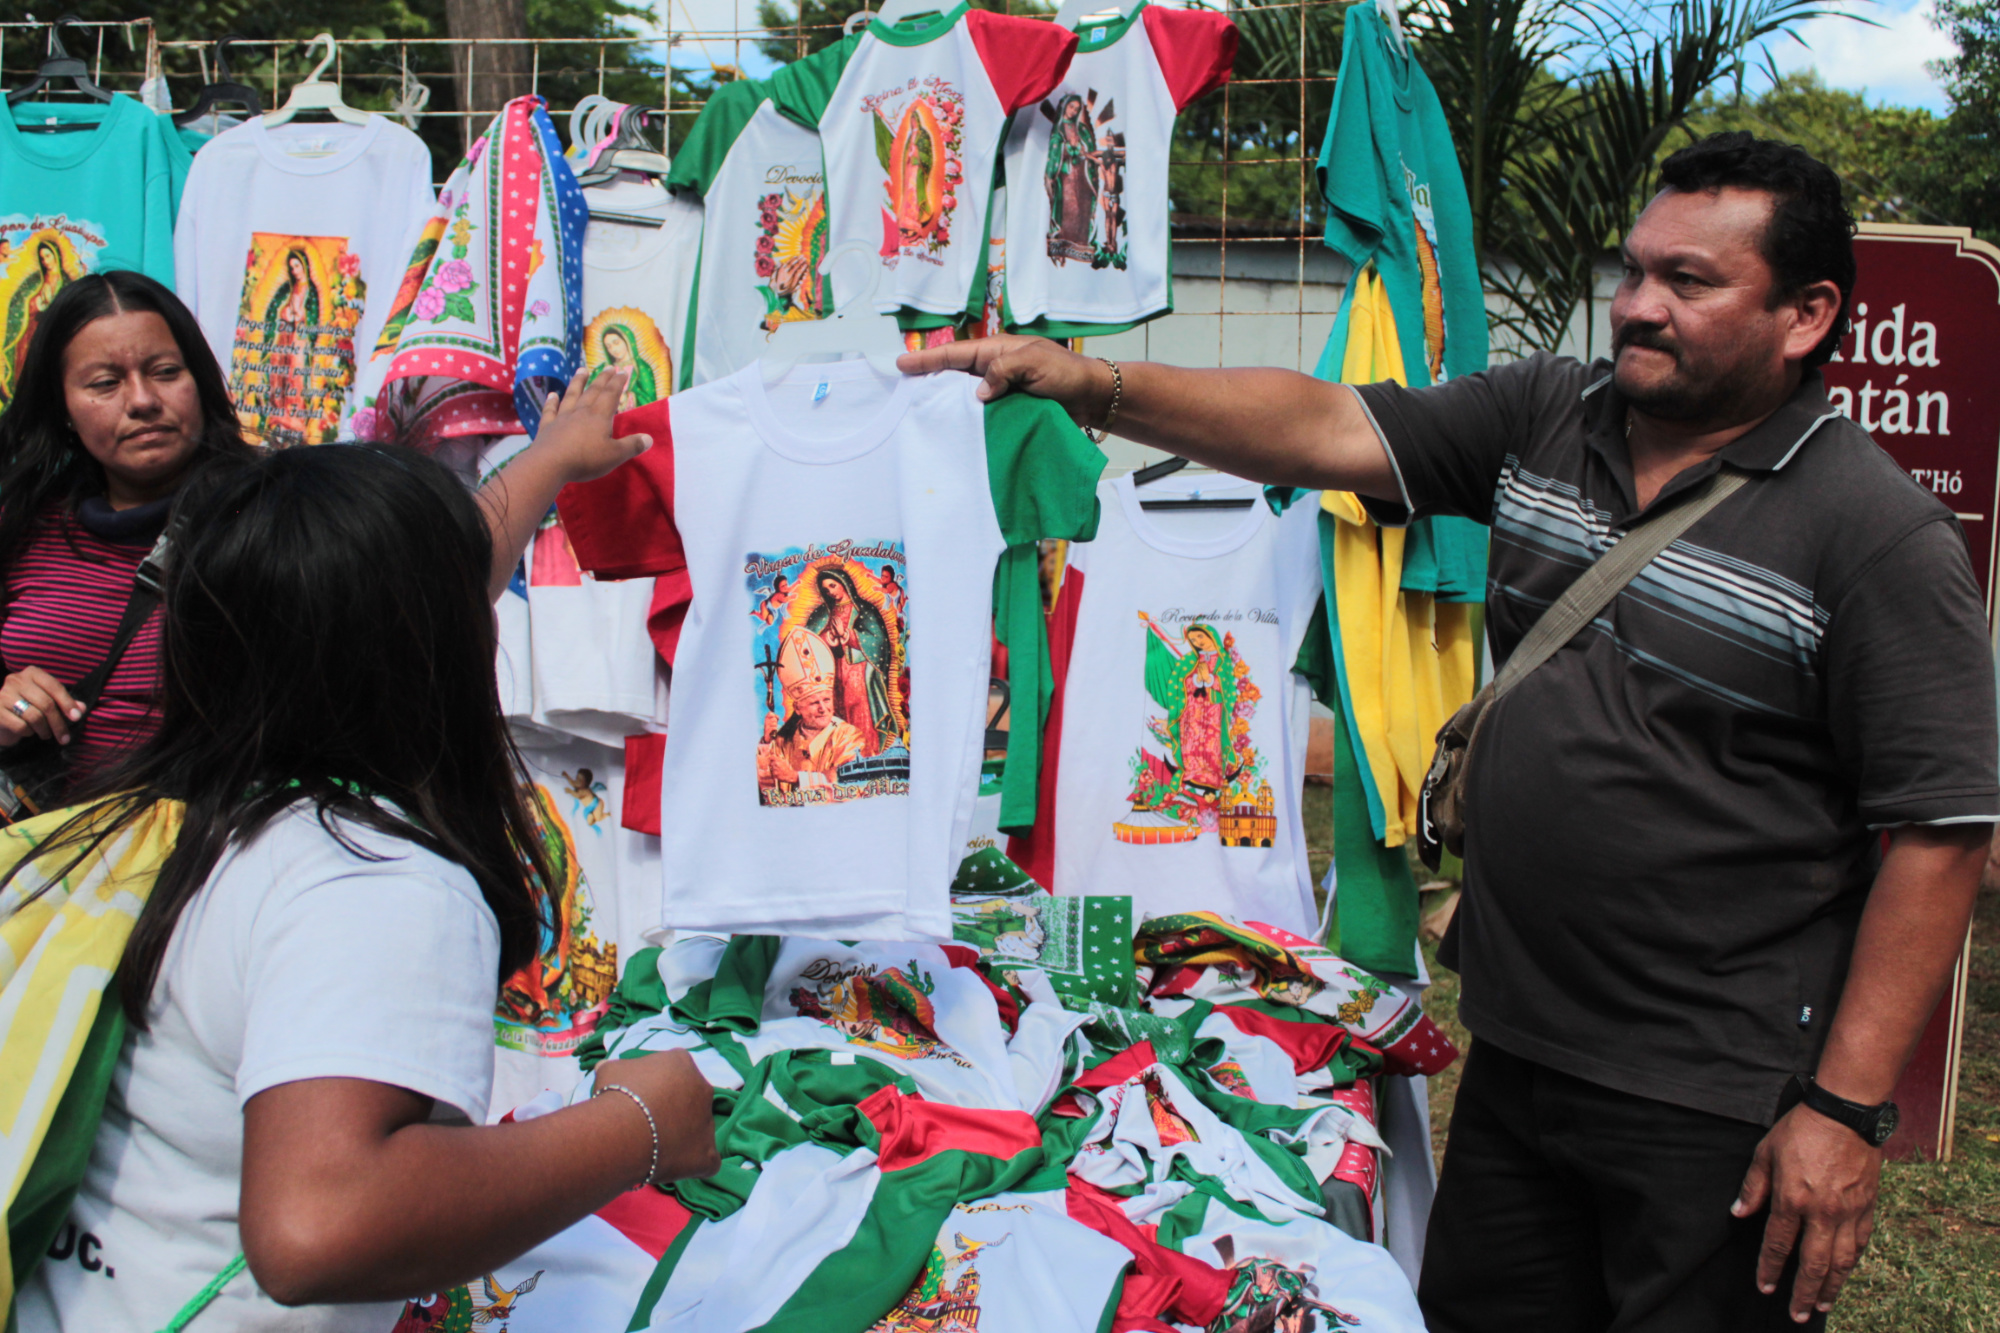 Reabren a peregrinos fiesta de Virgen de Guadalupe: misas presenciales  11 y 12 de diciembre en San Cristóbal